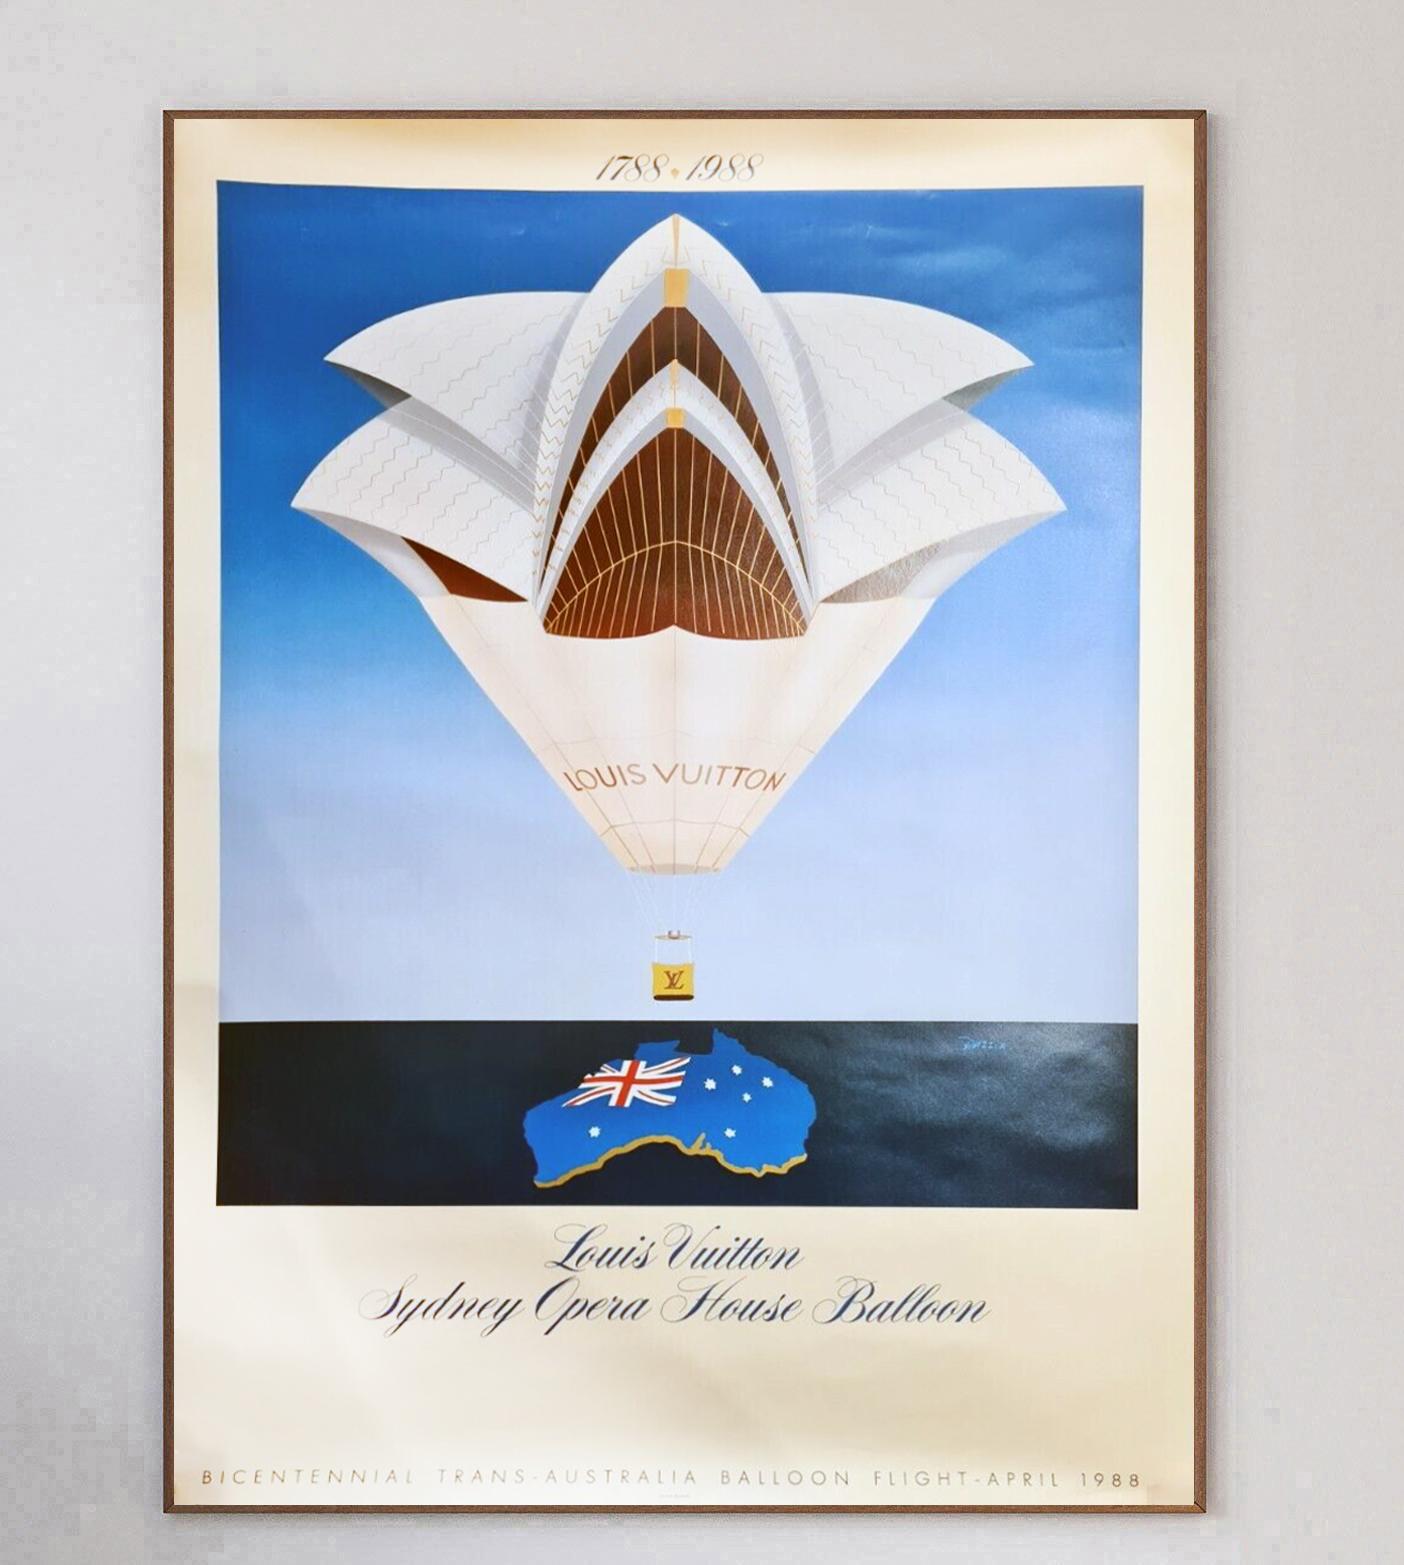 Représentant une superbe scène art déco du ballon Louis Vuitton Sydney Opera House, une montgolfière ayant le même style que l'emblématique Opéra de Sydney, cette affiche a été créée en 1988 pour le vol en ballon du bicentenaire de la